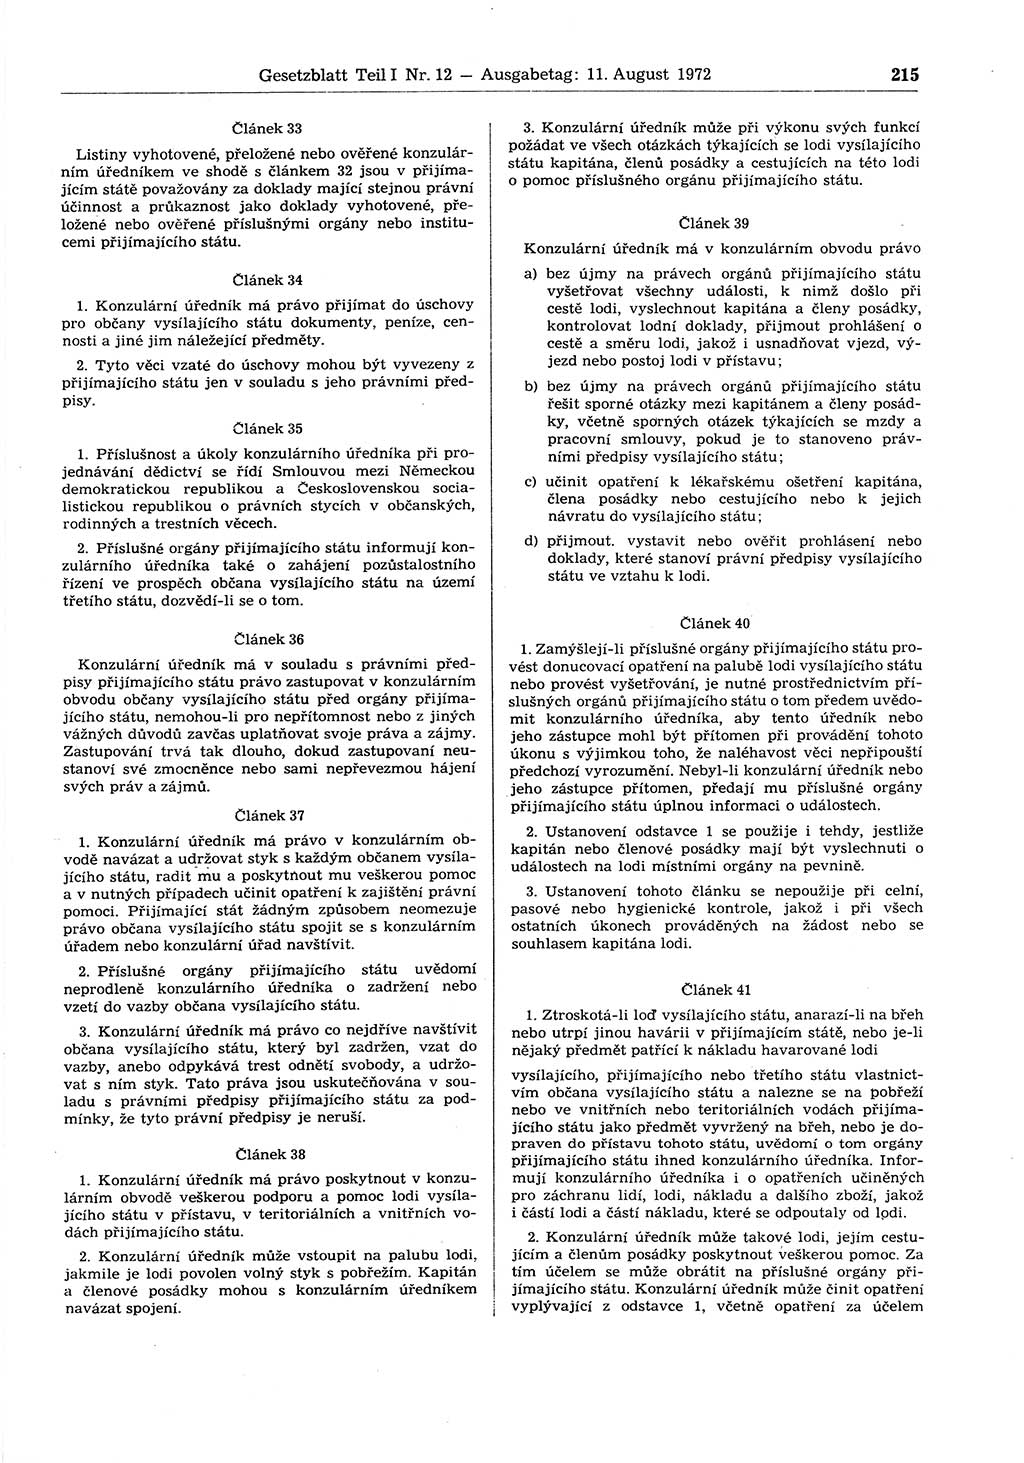 Gesetzblatt (GBl.) der Deutschen Demokratischen Republik (DDR) Teil Ⅰ 1972, Seite 215 (GBl. DDR Ⅰ 1972, S. 215)